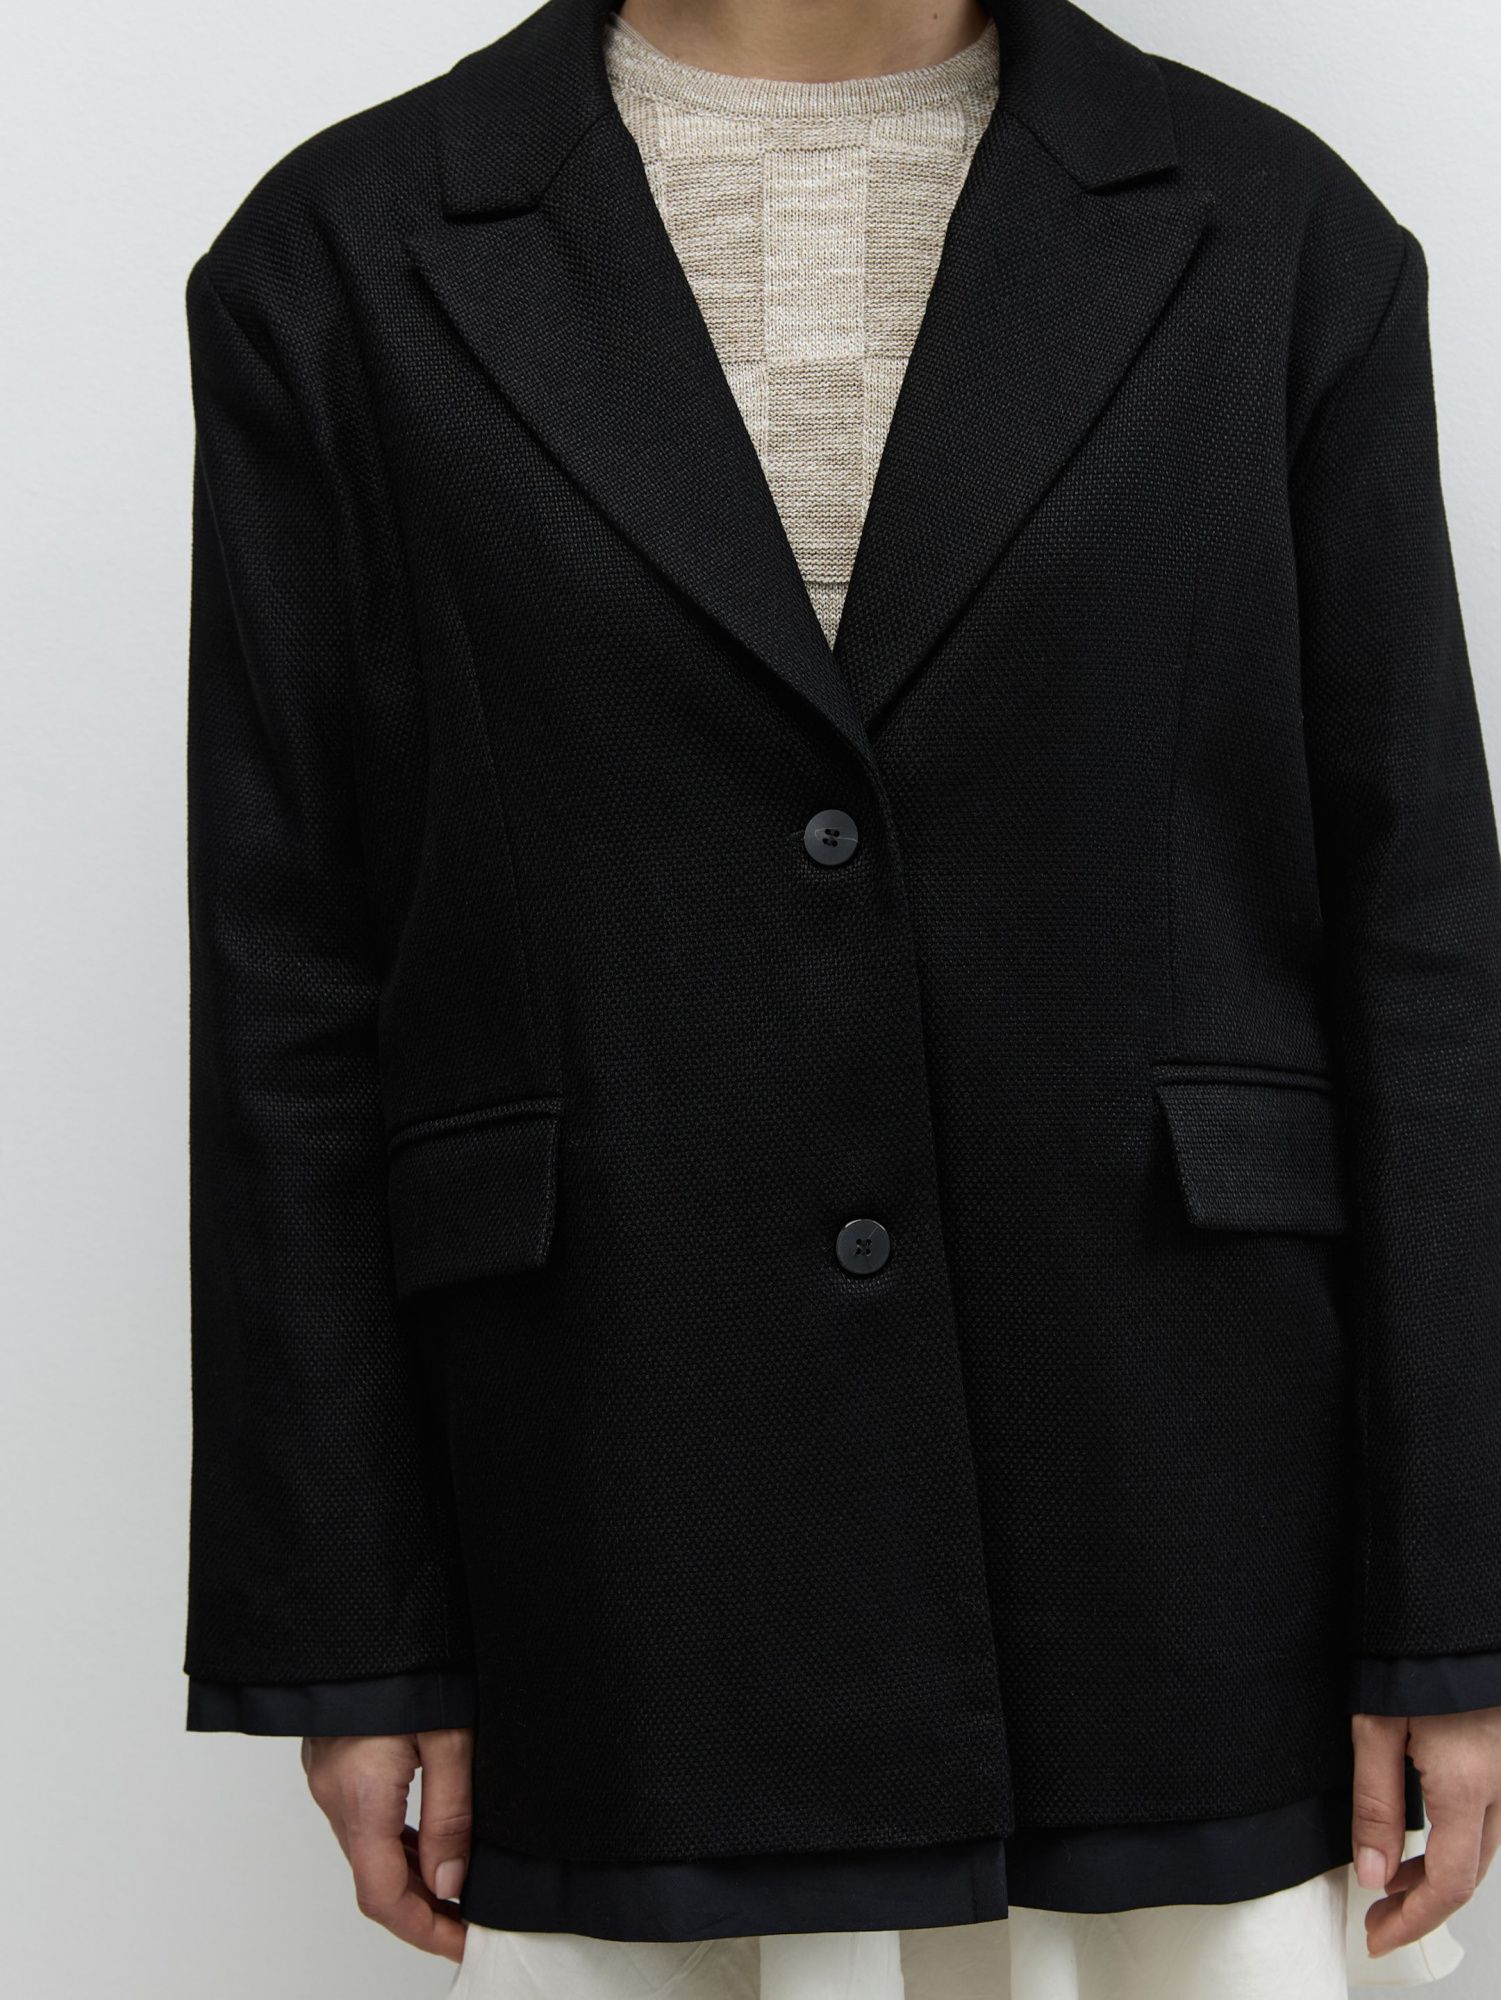 Жакет изо льна с имитацией рубашки черный - фото 6. Around